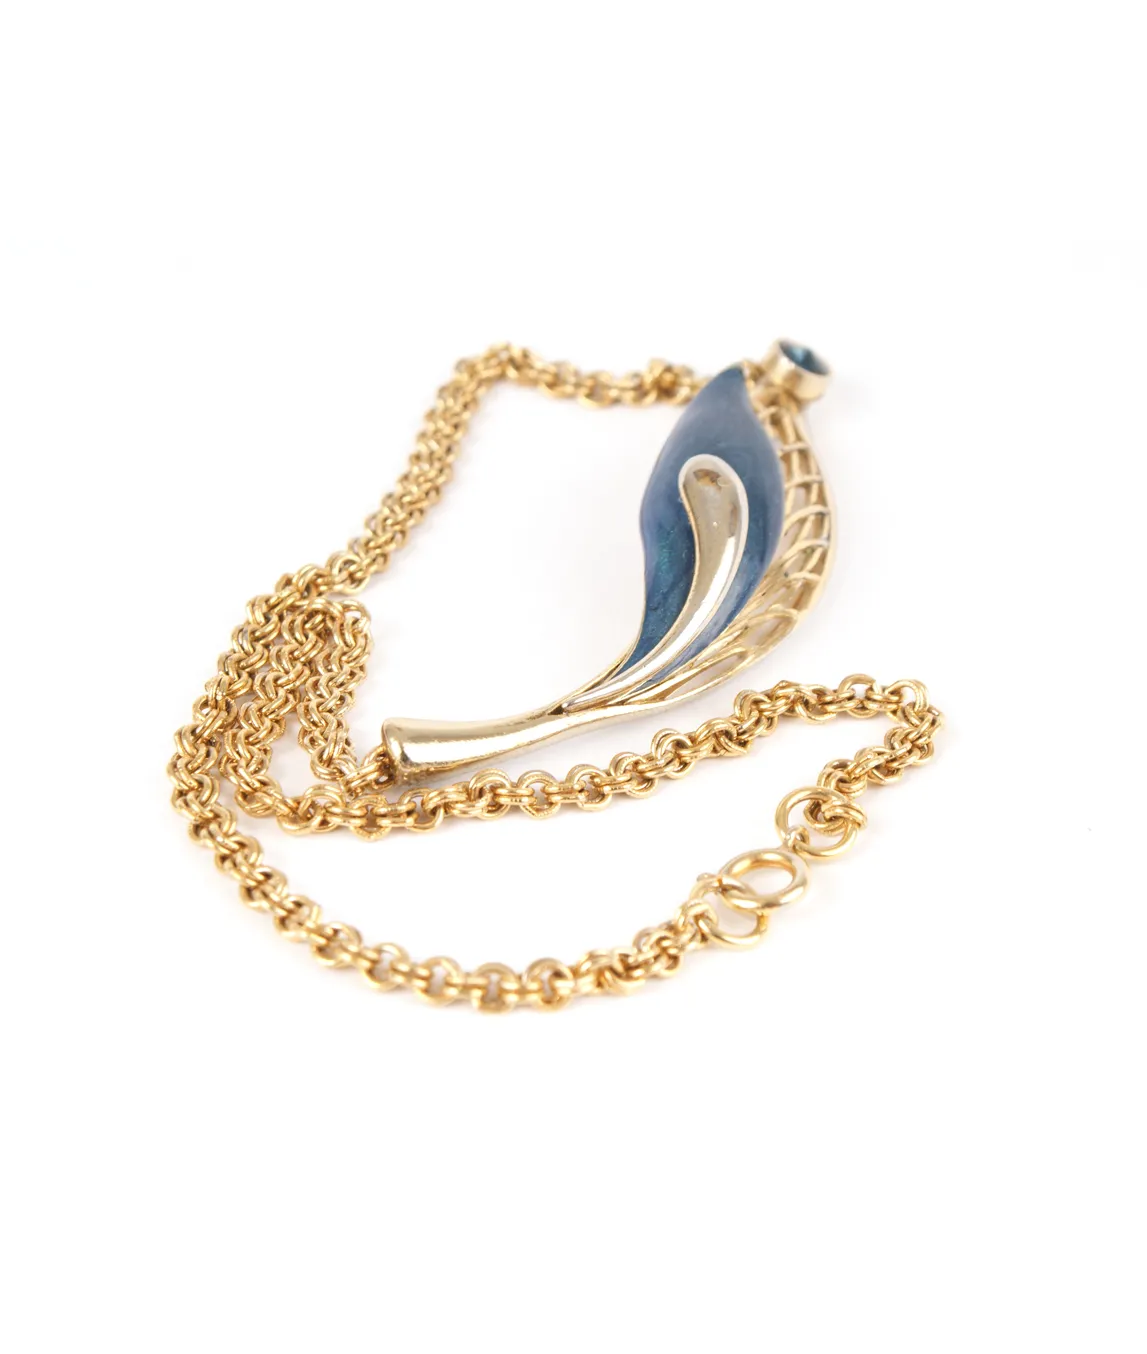 Balenciaga blue and gold necklace